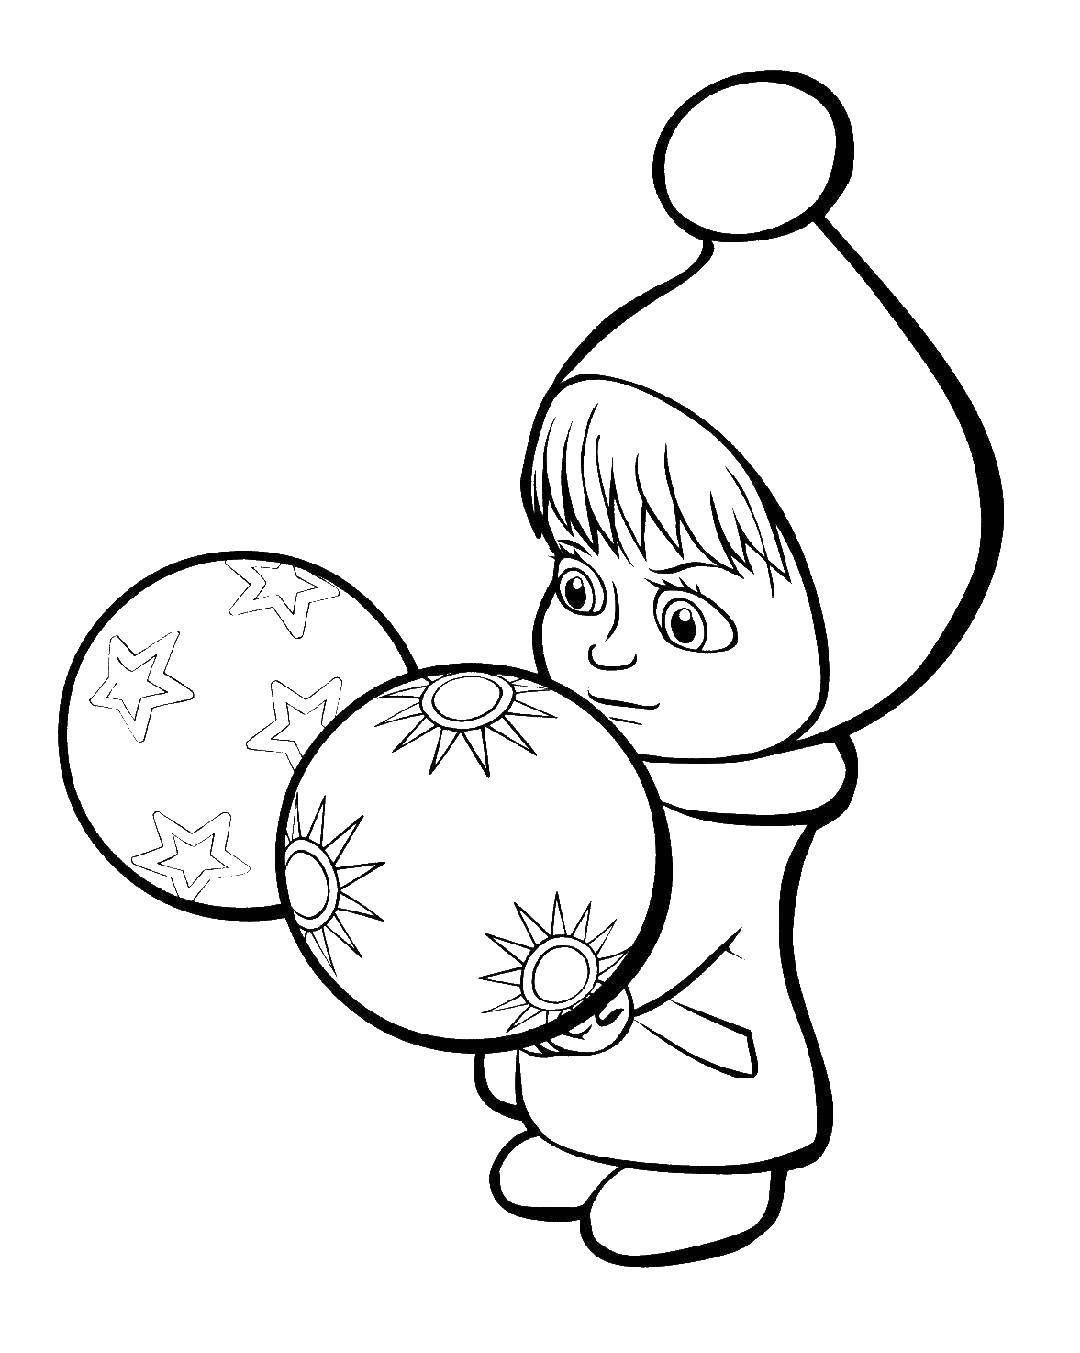 Розмальовки  Маша з кульками. Завантажити розмальовку Маша, Ведмідь.  Роздрукувати ,маша і ведмідь,